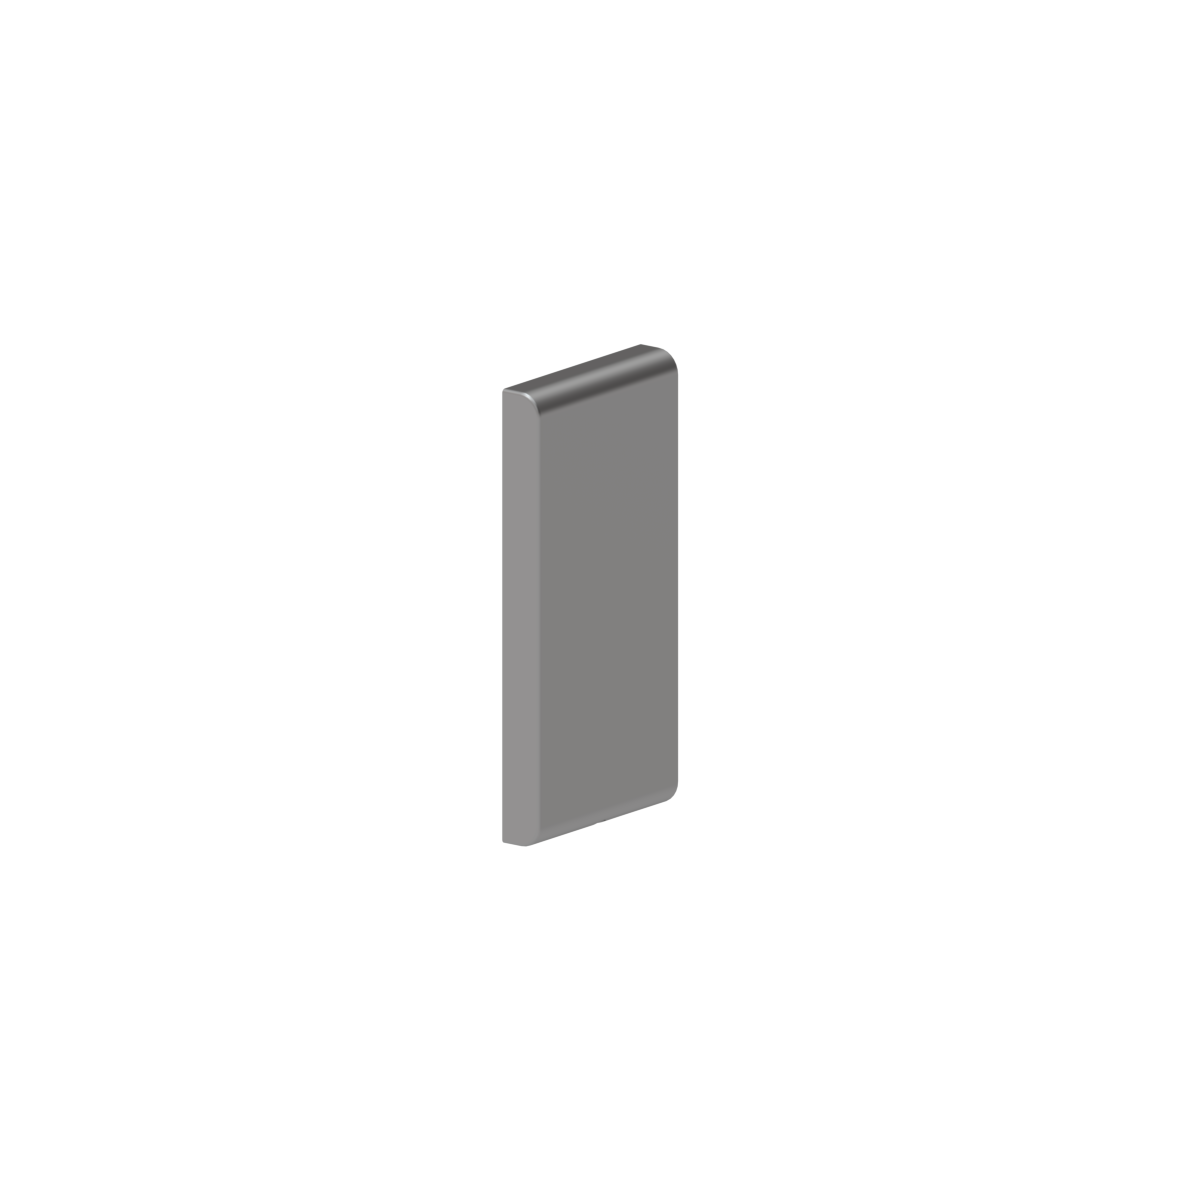 Inox Care Grundplatte vario, mit Blindabdeckung, 226 x 110 x 23 mm, Edelstahl